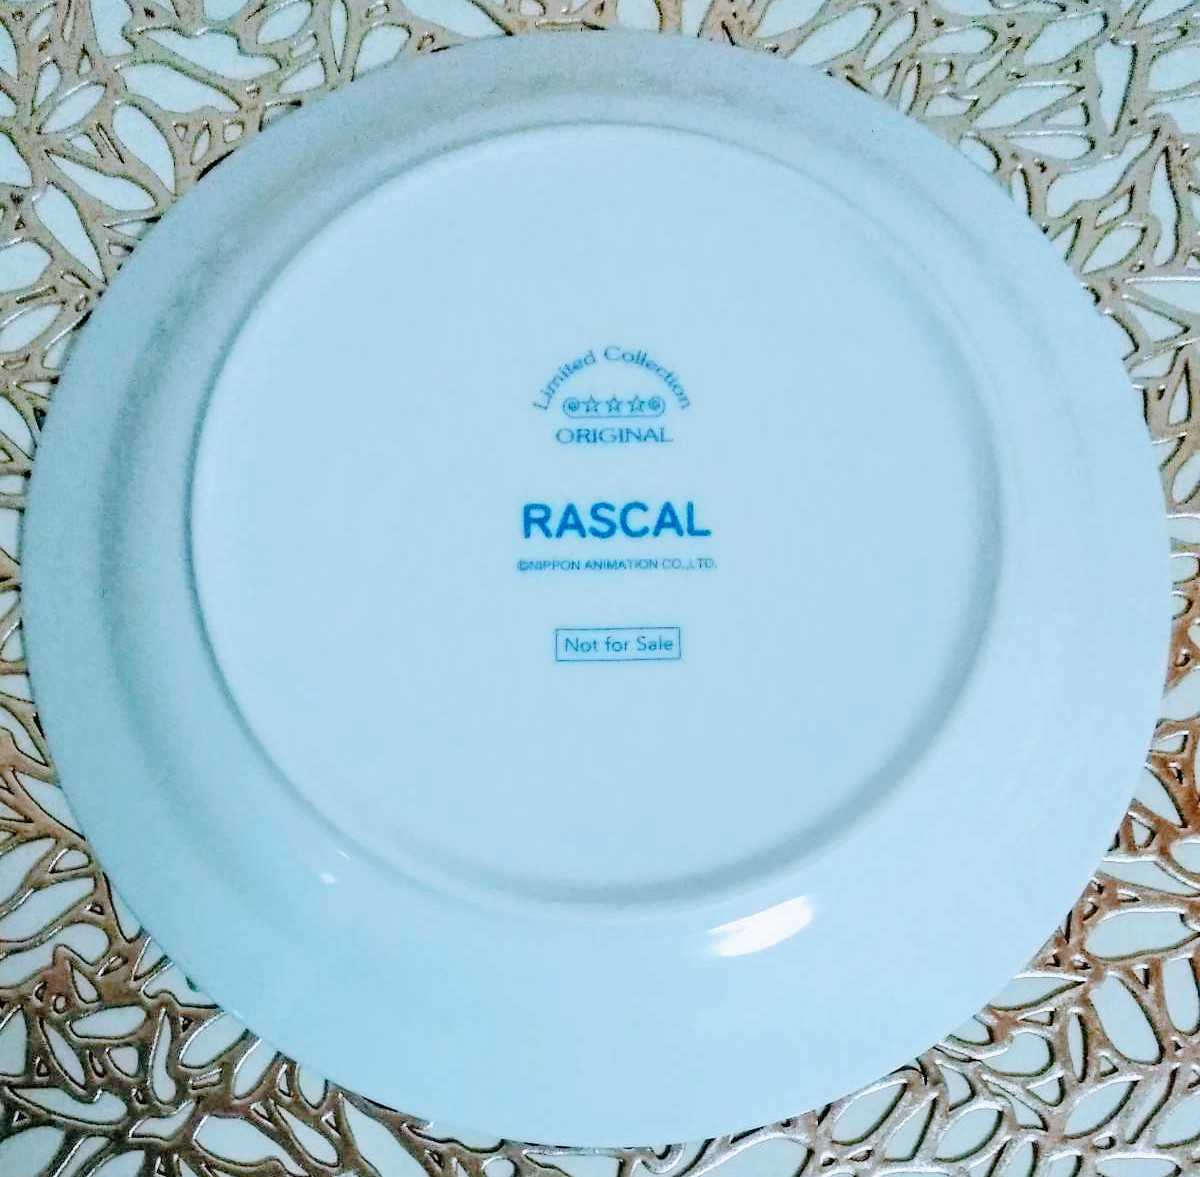   блиц-цена ！  новый товар    товара нет в свободной продаже   симпатичный  RASCAL ... ... ...  столовая посуда  ...  тарелка     планка      тарелка   ... звонок ...  мир  название ...